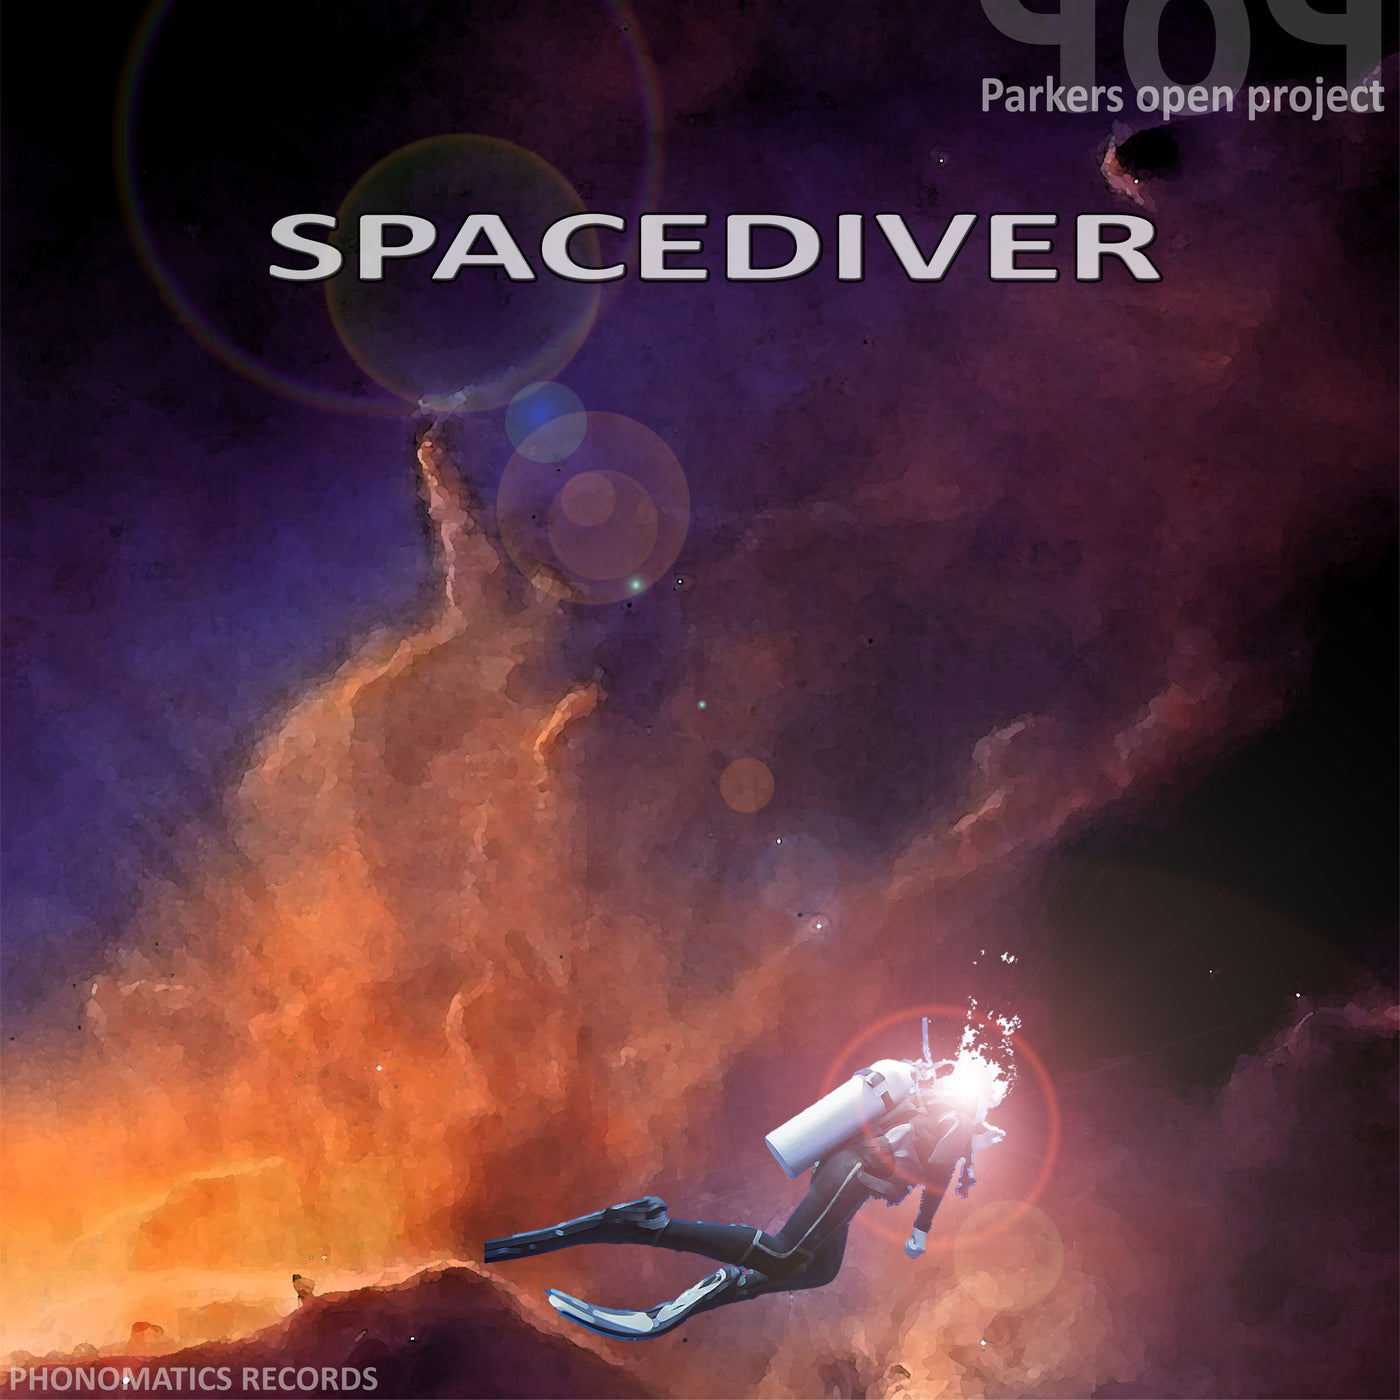 SpaceDiver